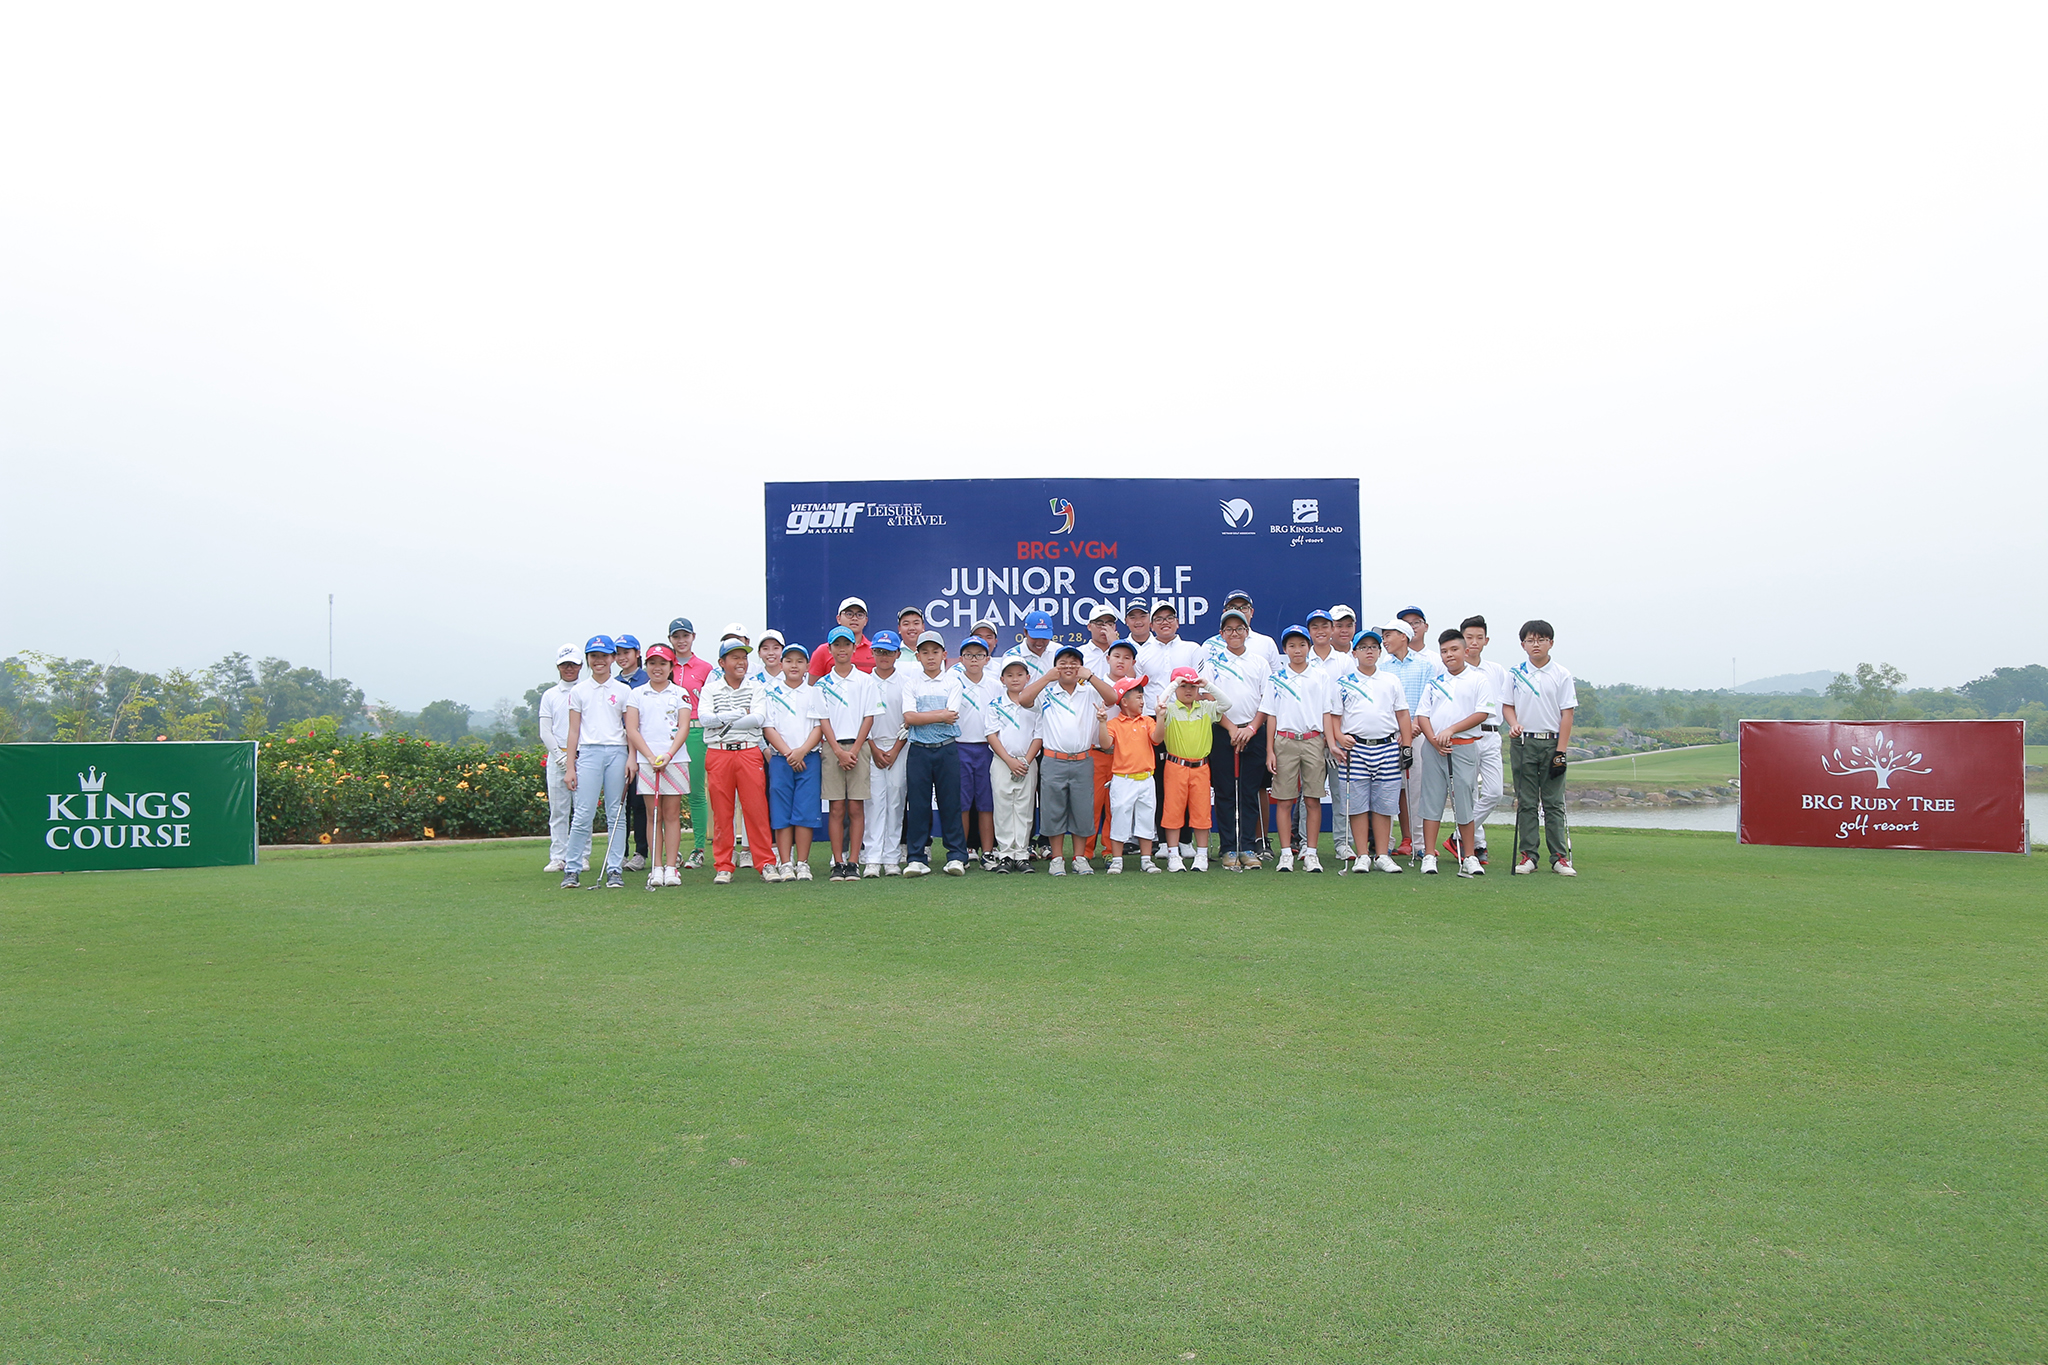 BRG – VGM Junior Championship 2019 tổ chức trên sân BRG Ruby Tree Golf Resort